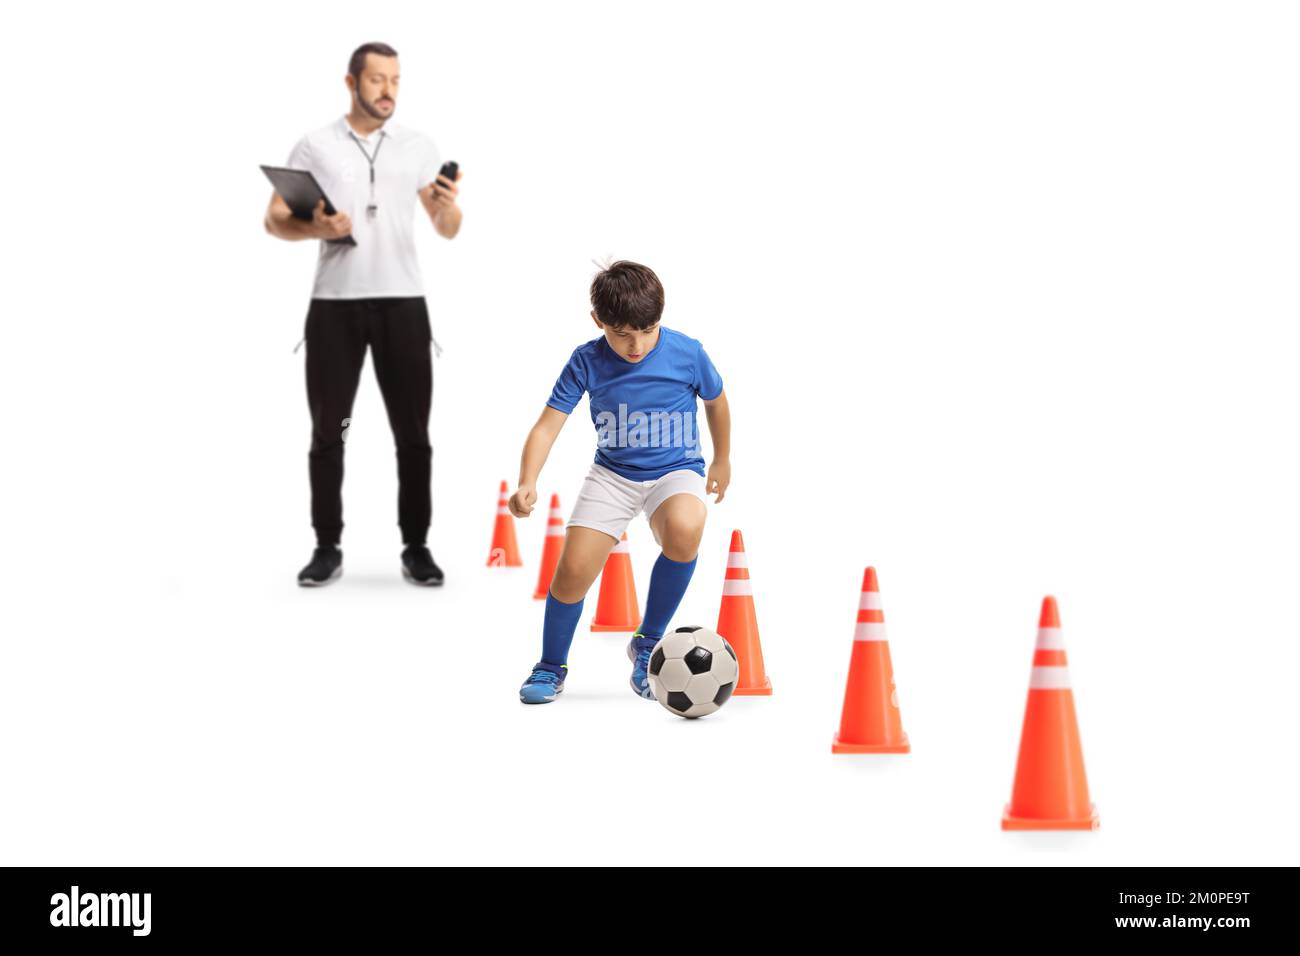 Entraîneur de football mesurant le temps et l'entraînement de garçon avec une balle isolée sur fond blanc Banque D'Images